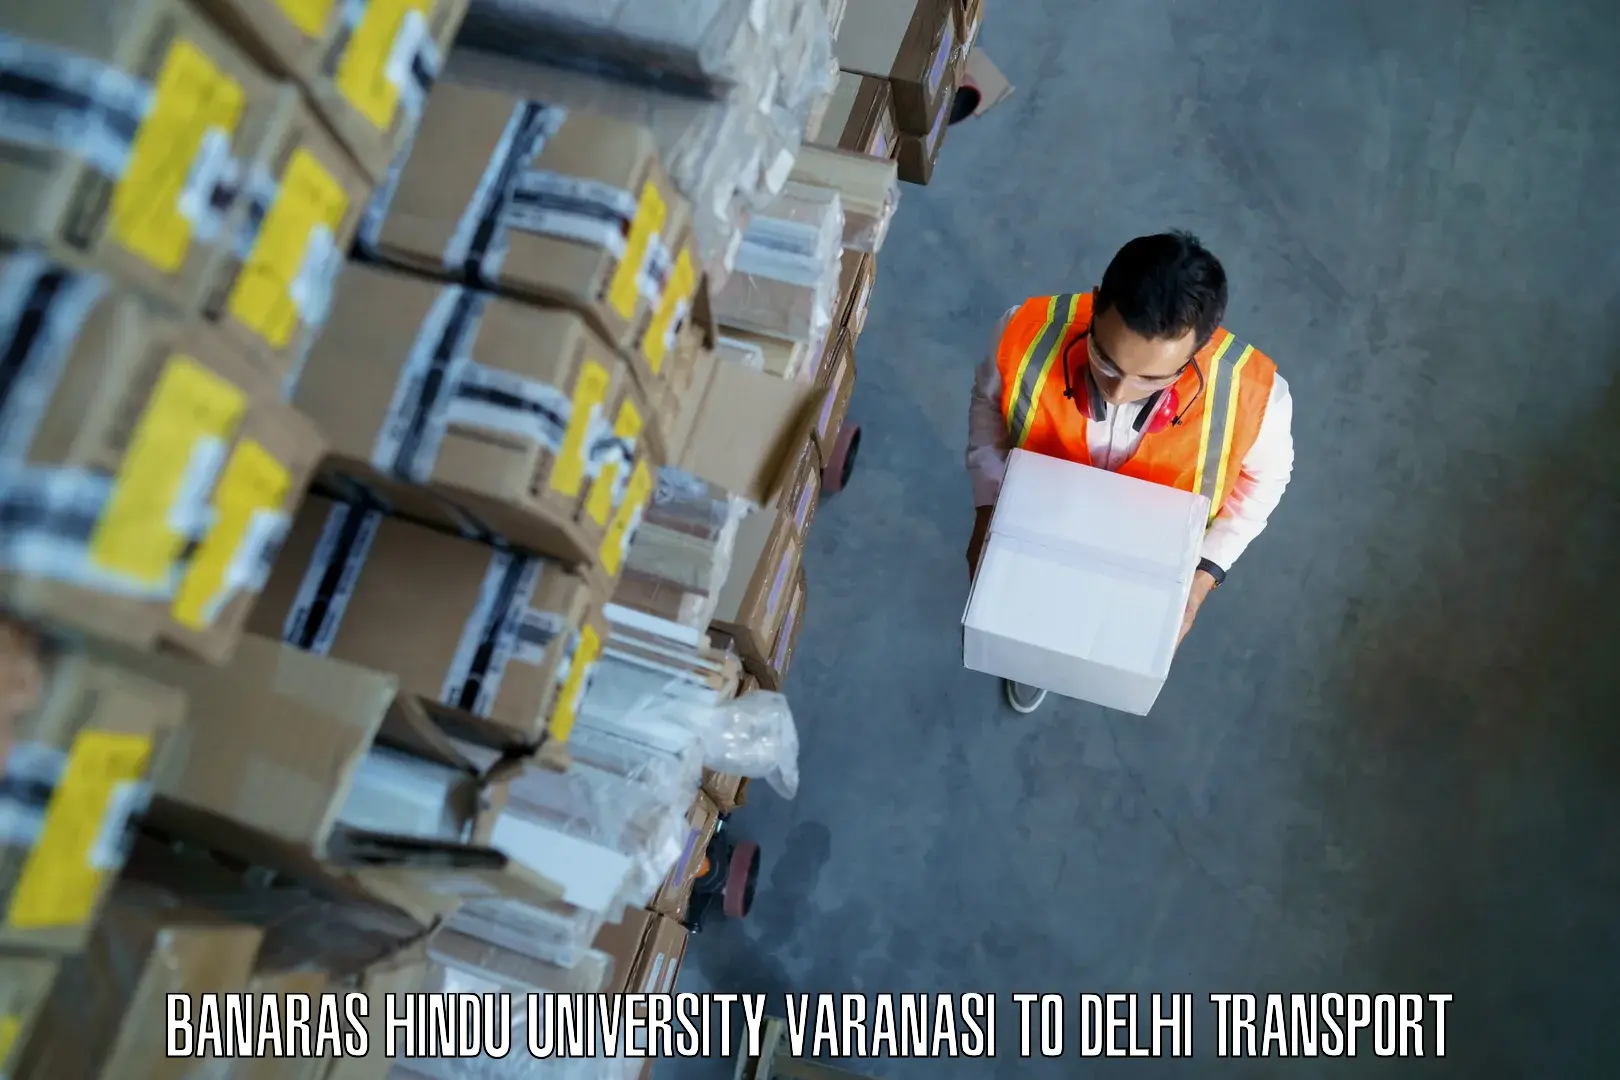 Daily transport service Banaras Hindu University Varanasi to Delhi